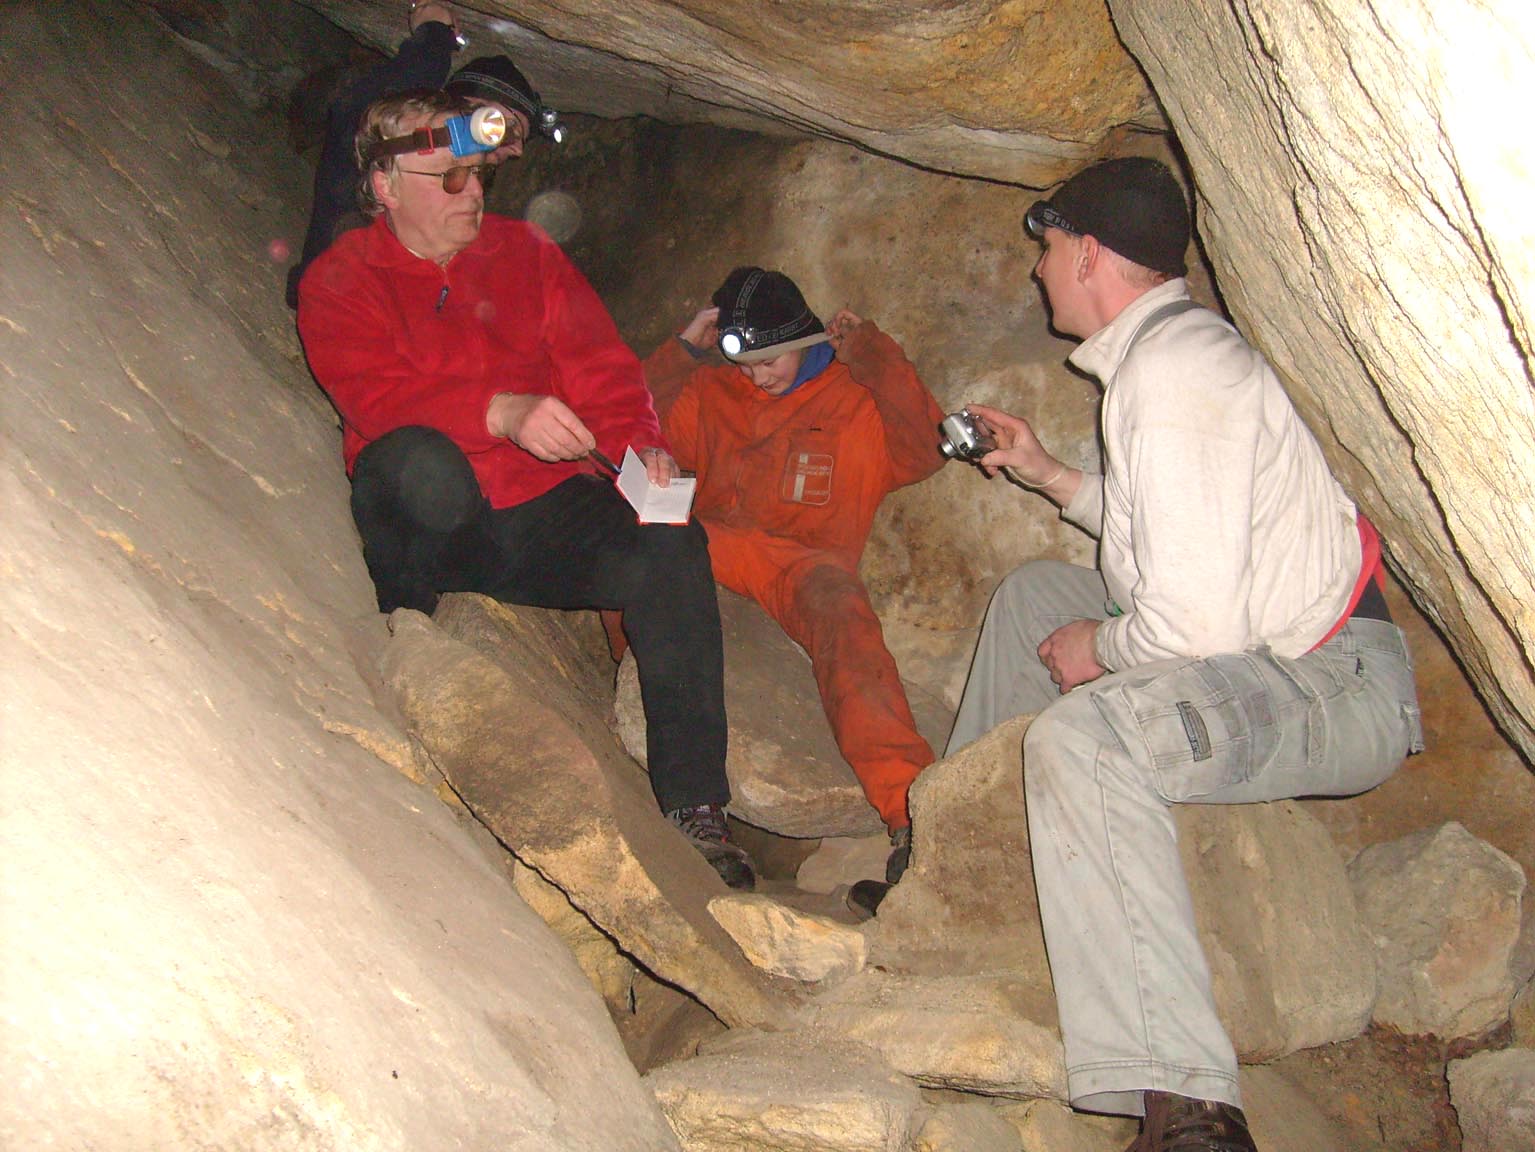 Die kleine Bärfanghöhle wurde erst in den letzten Jahren entdeckt